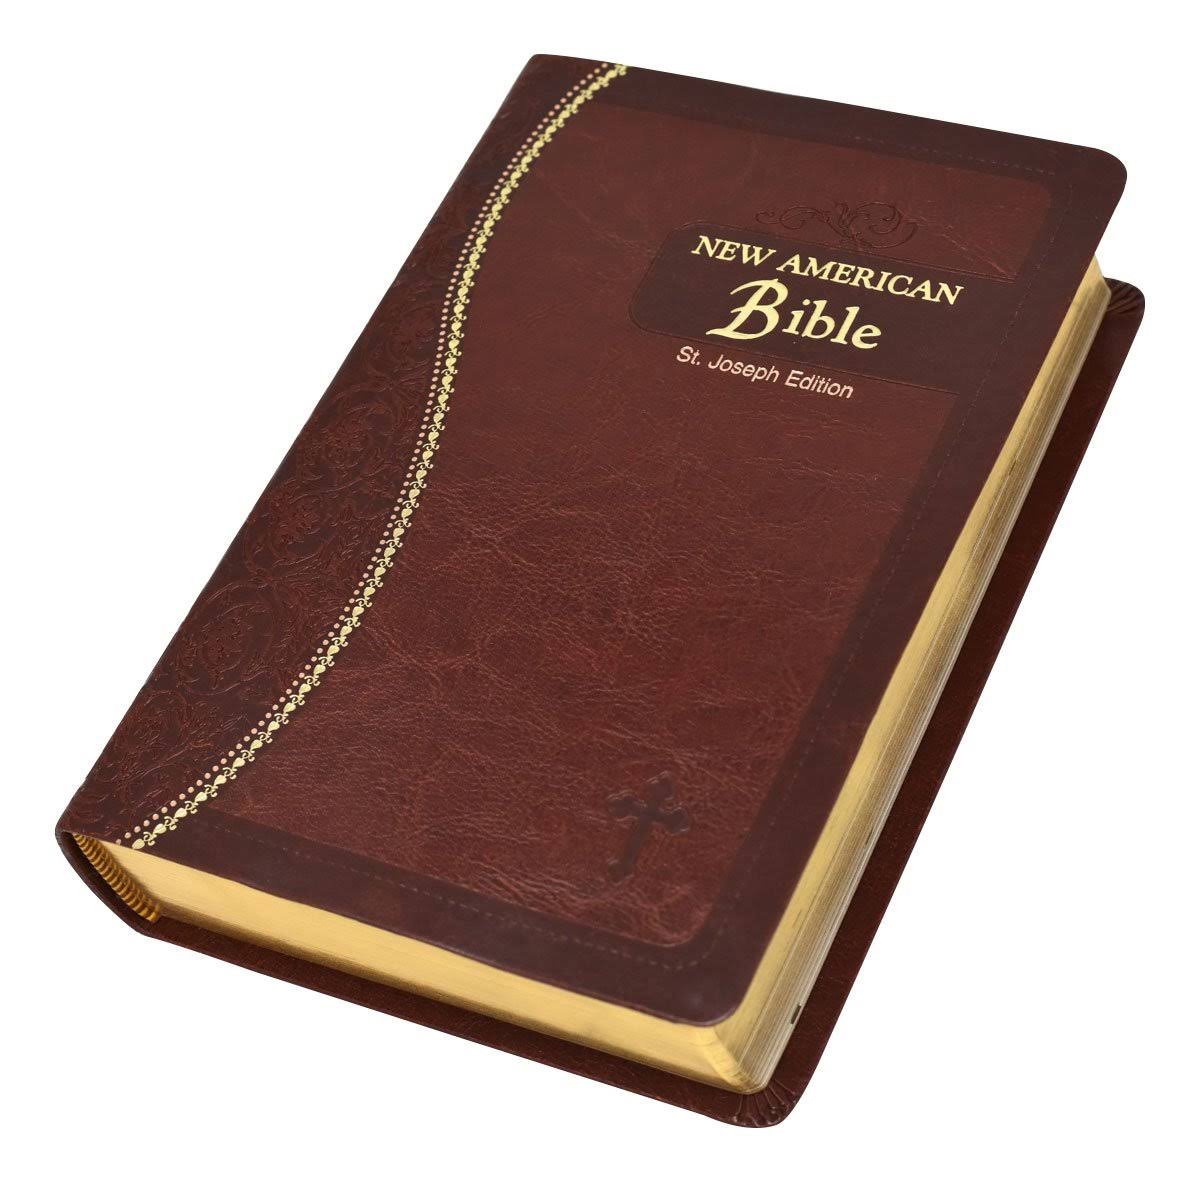 St. Joseph Medium Size Gift Bible - Catholic Book Publishing Corp